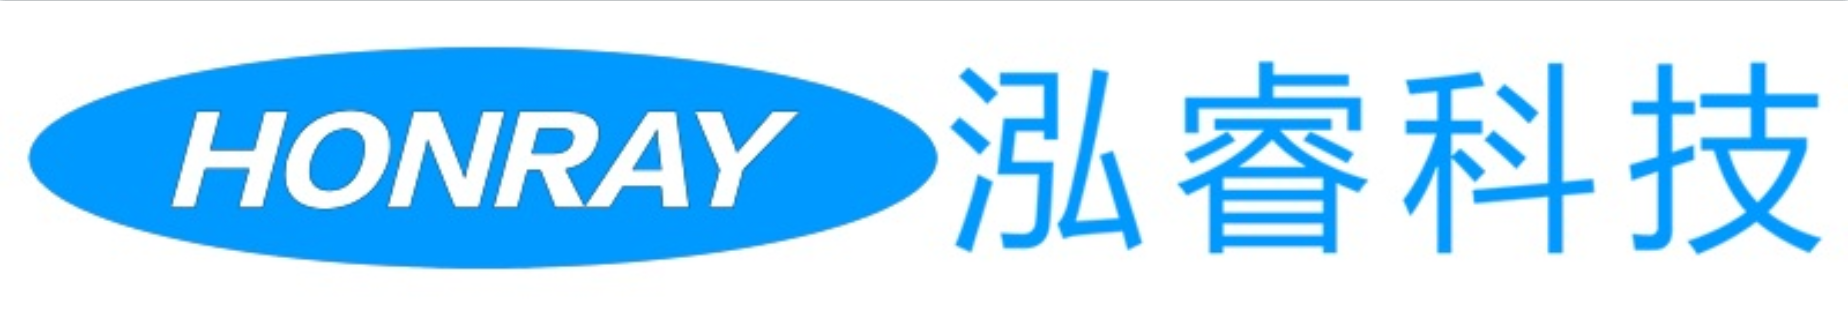 Chengdu Honray Technology Co., Ltd.